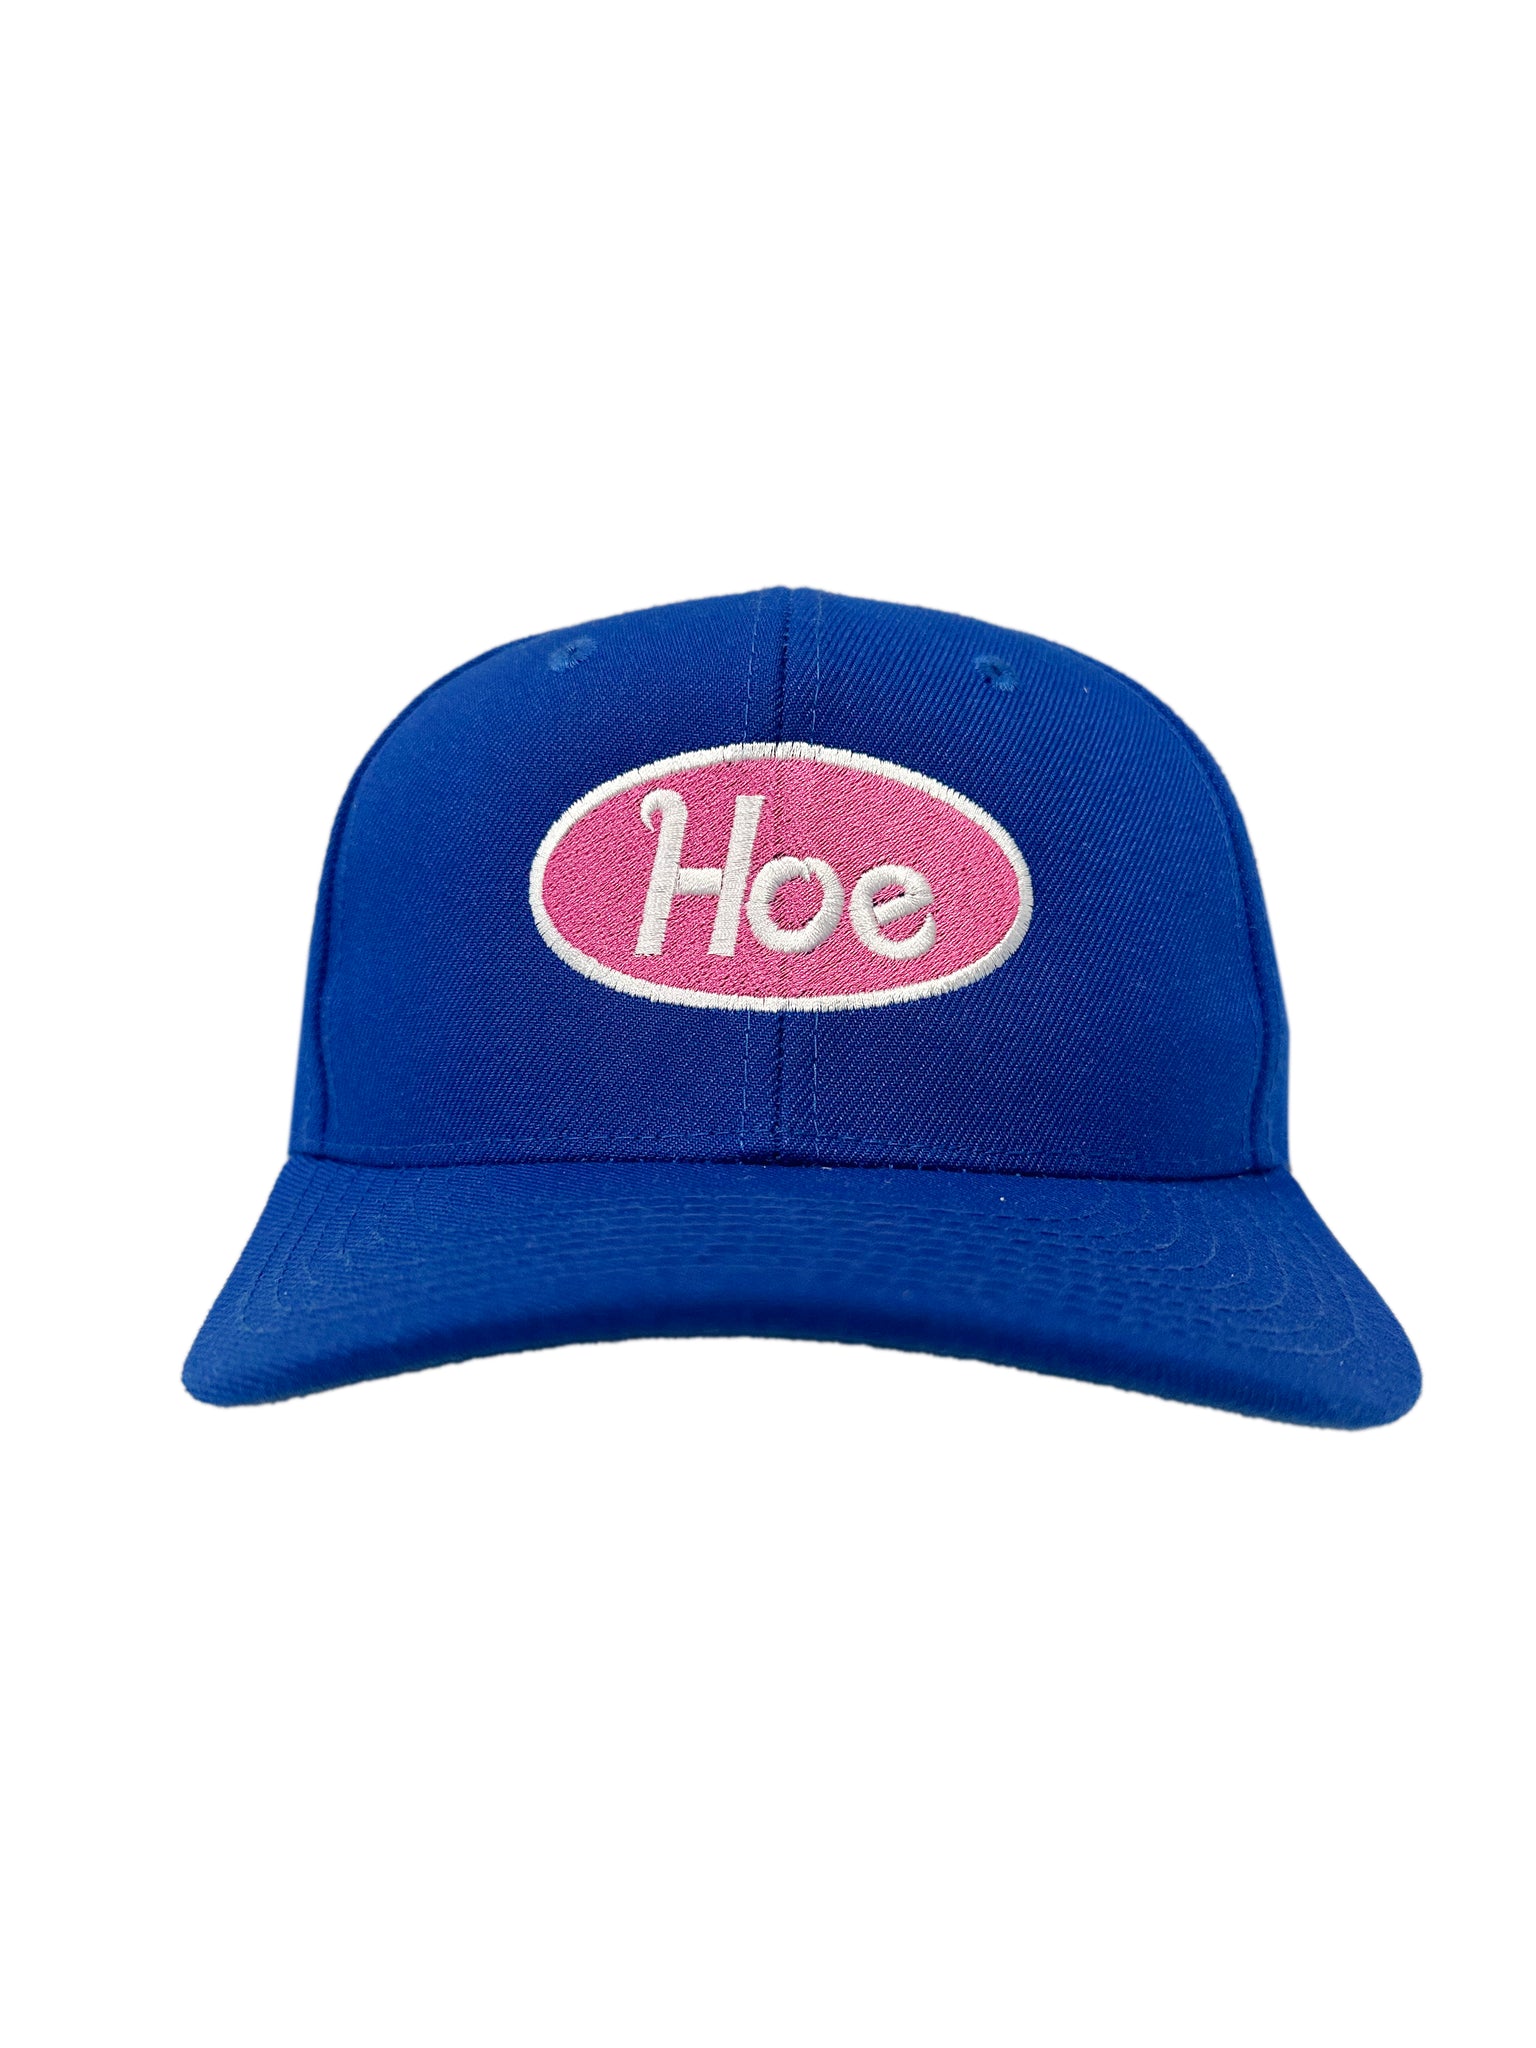 HOE CAP